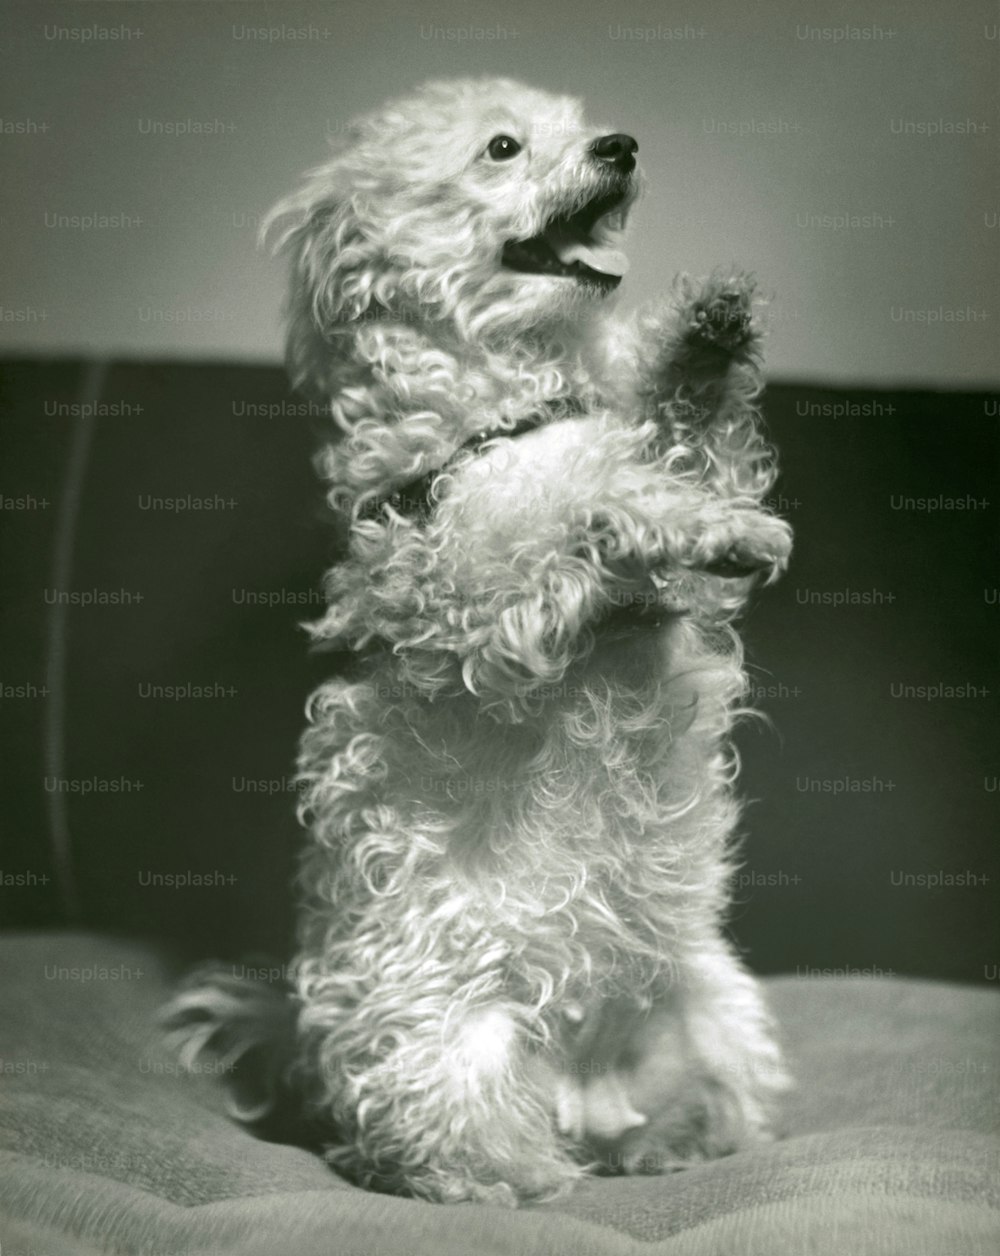 STATI UNITI - 1950 CIRCA: Cane in piedi sulle zampe posteriori.